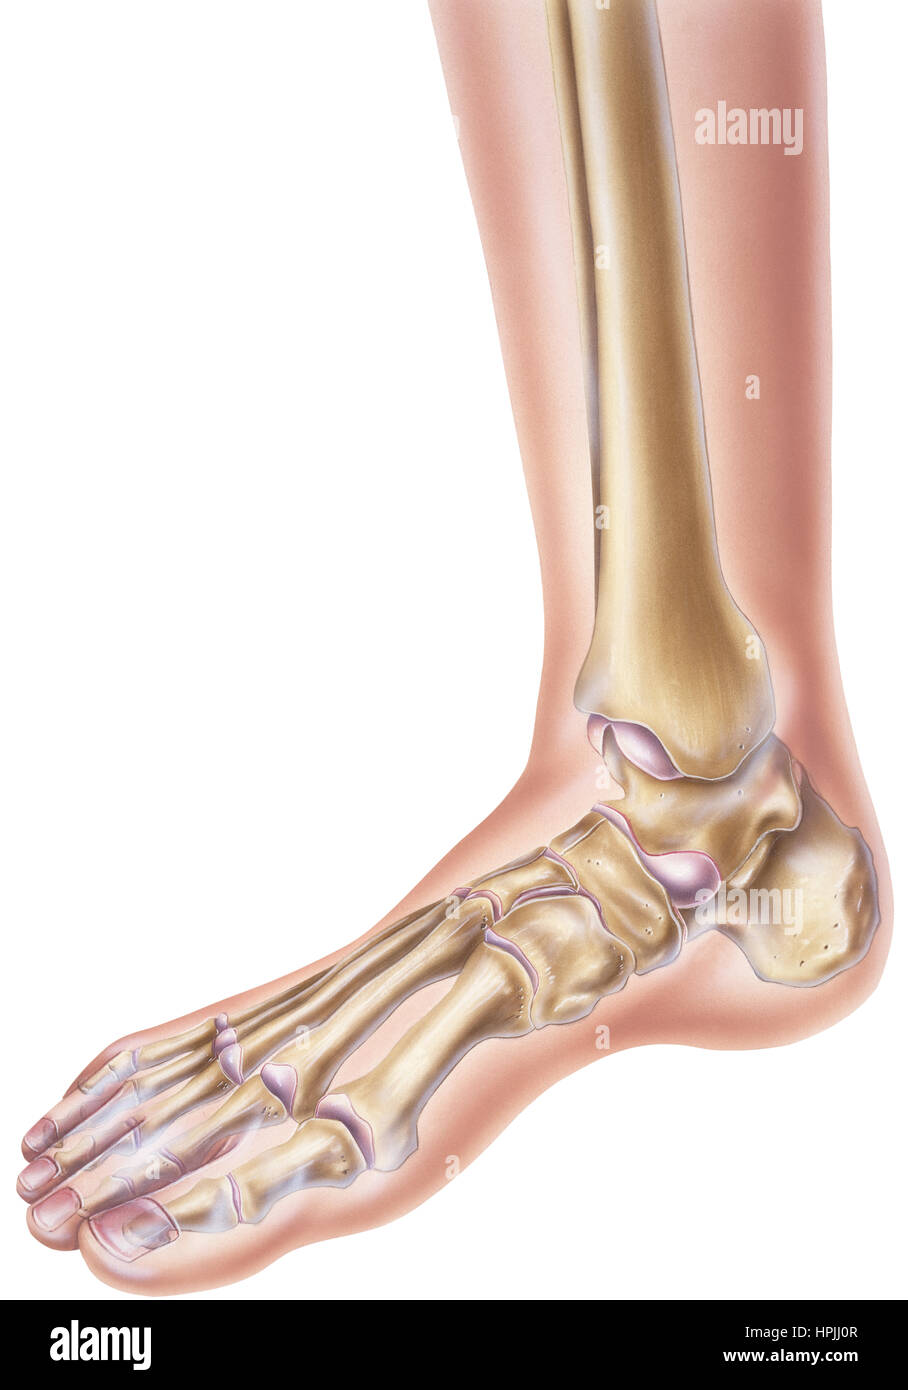 Un ser humano normal del pie y del tobillo mostrando los huesos y  articulaciones Fotografía de stock - Alamy